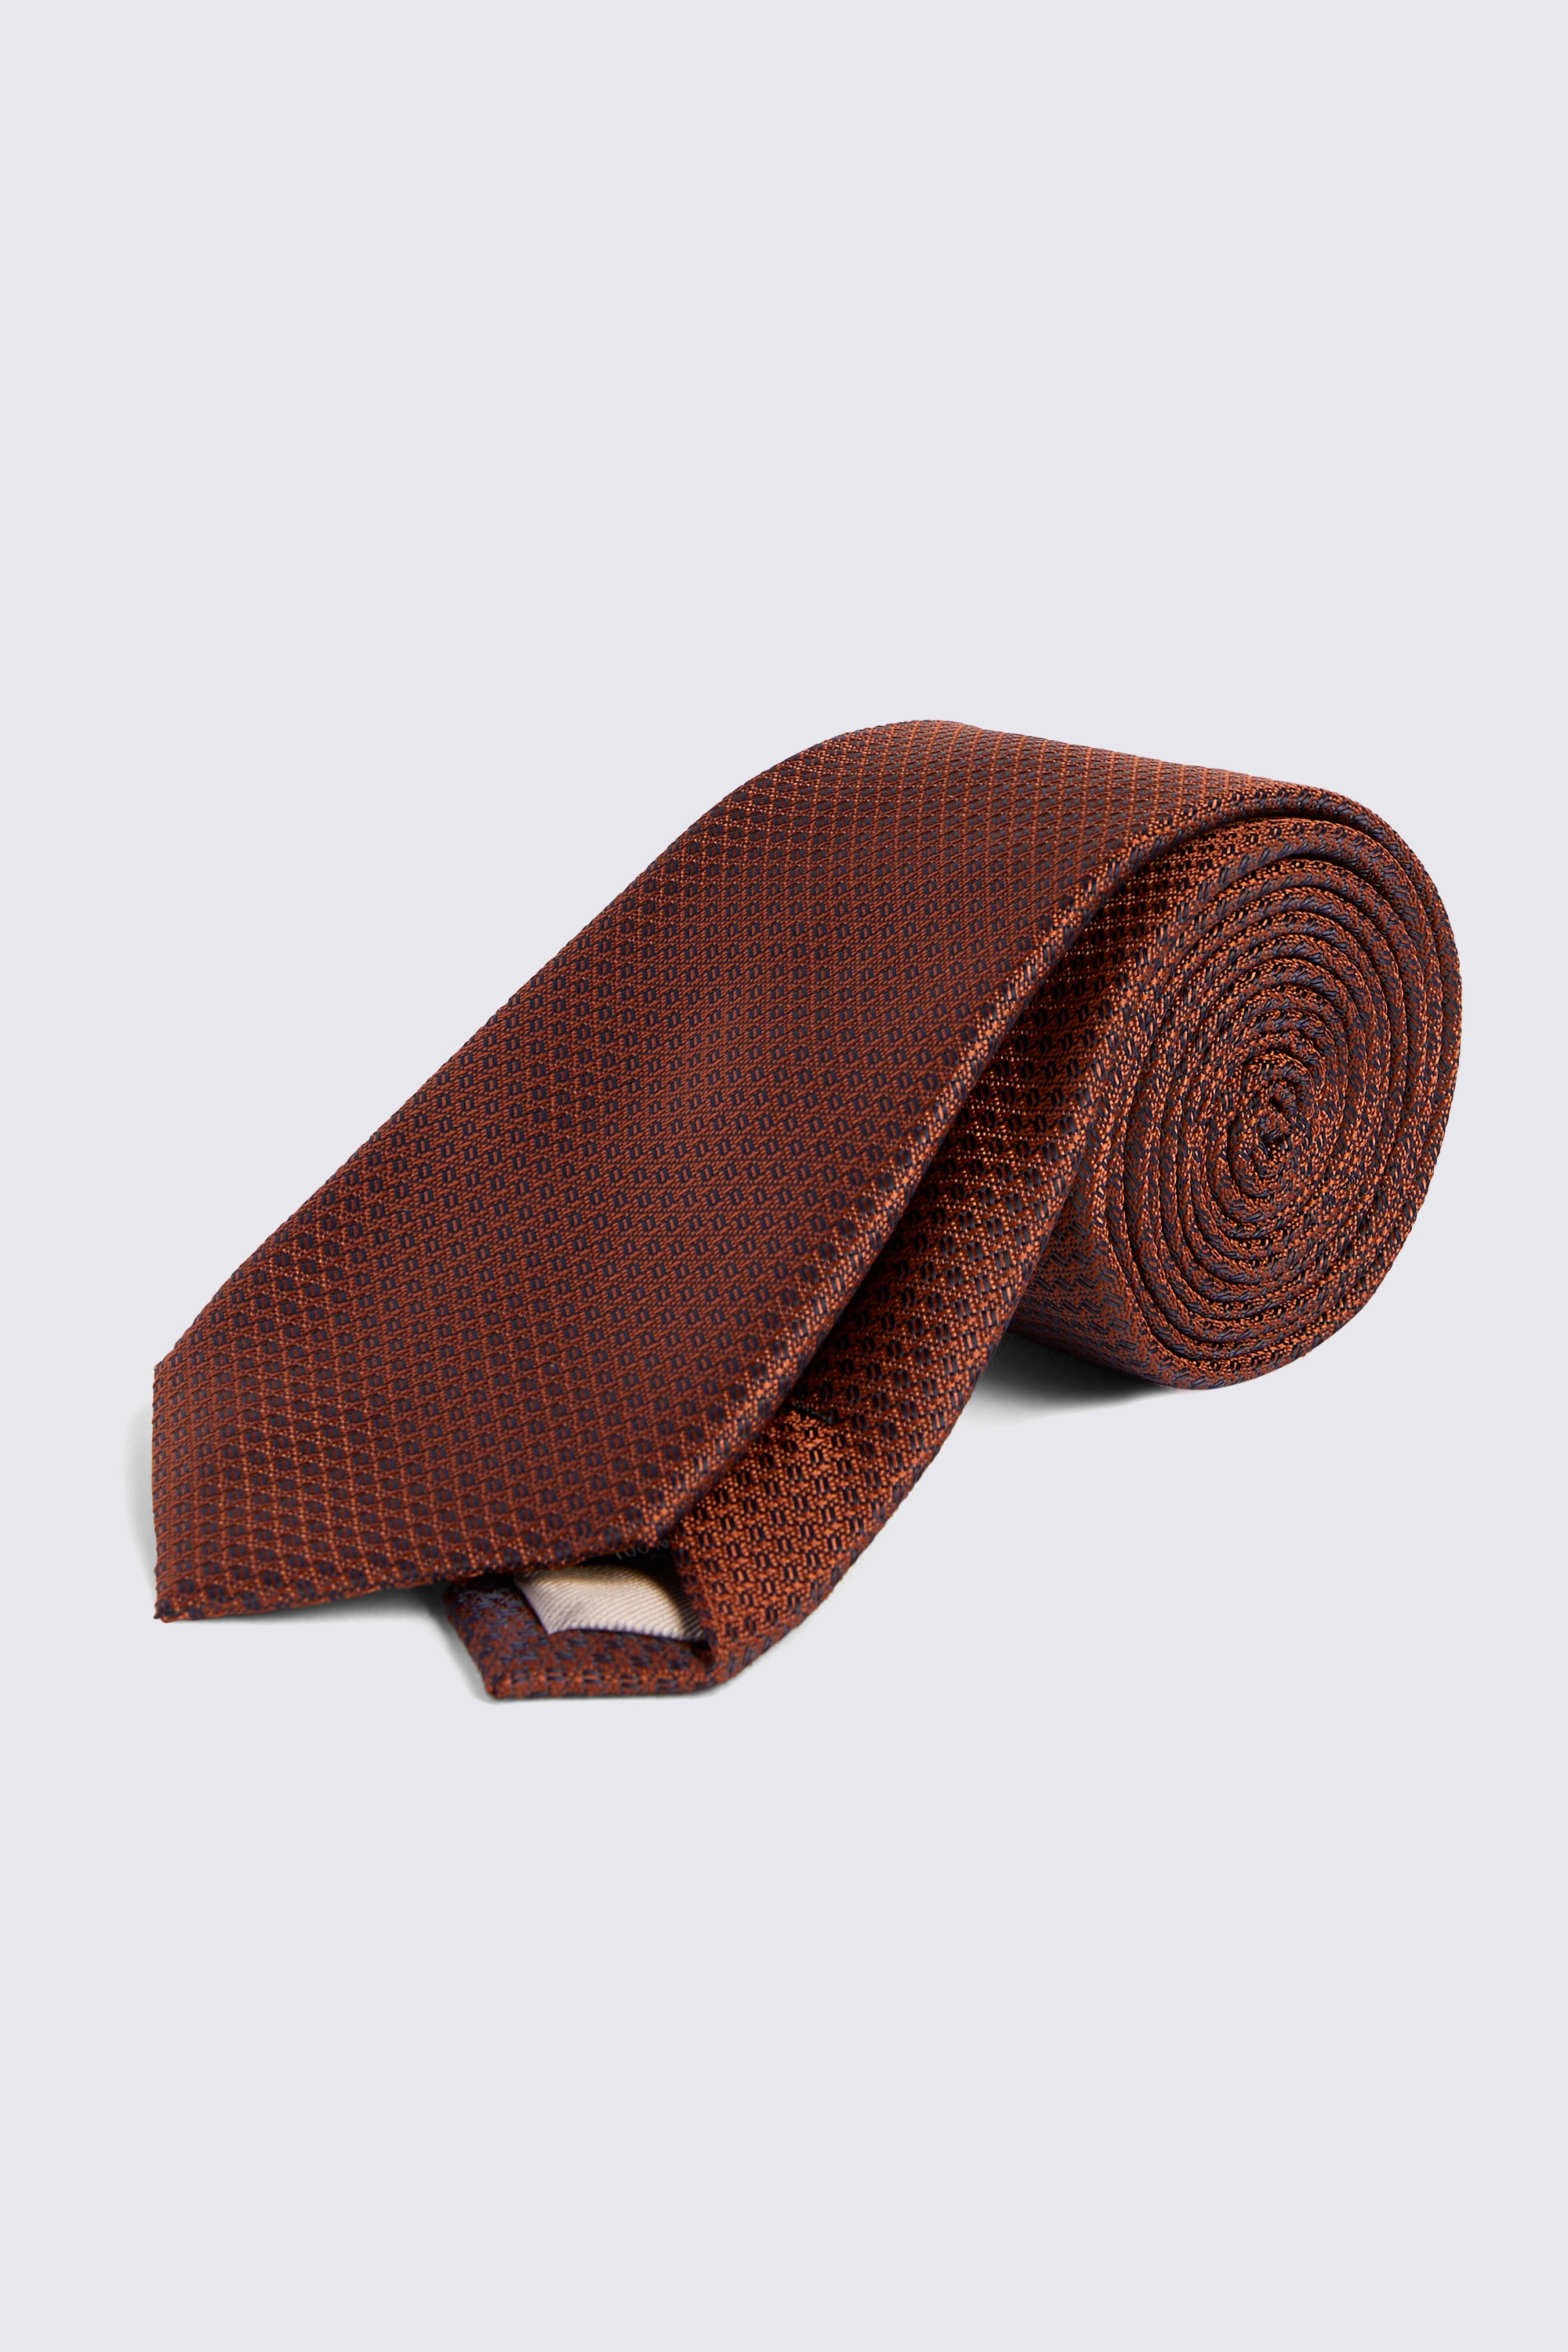 Rust Textured Tie | Buy Online at Moss